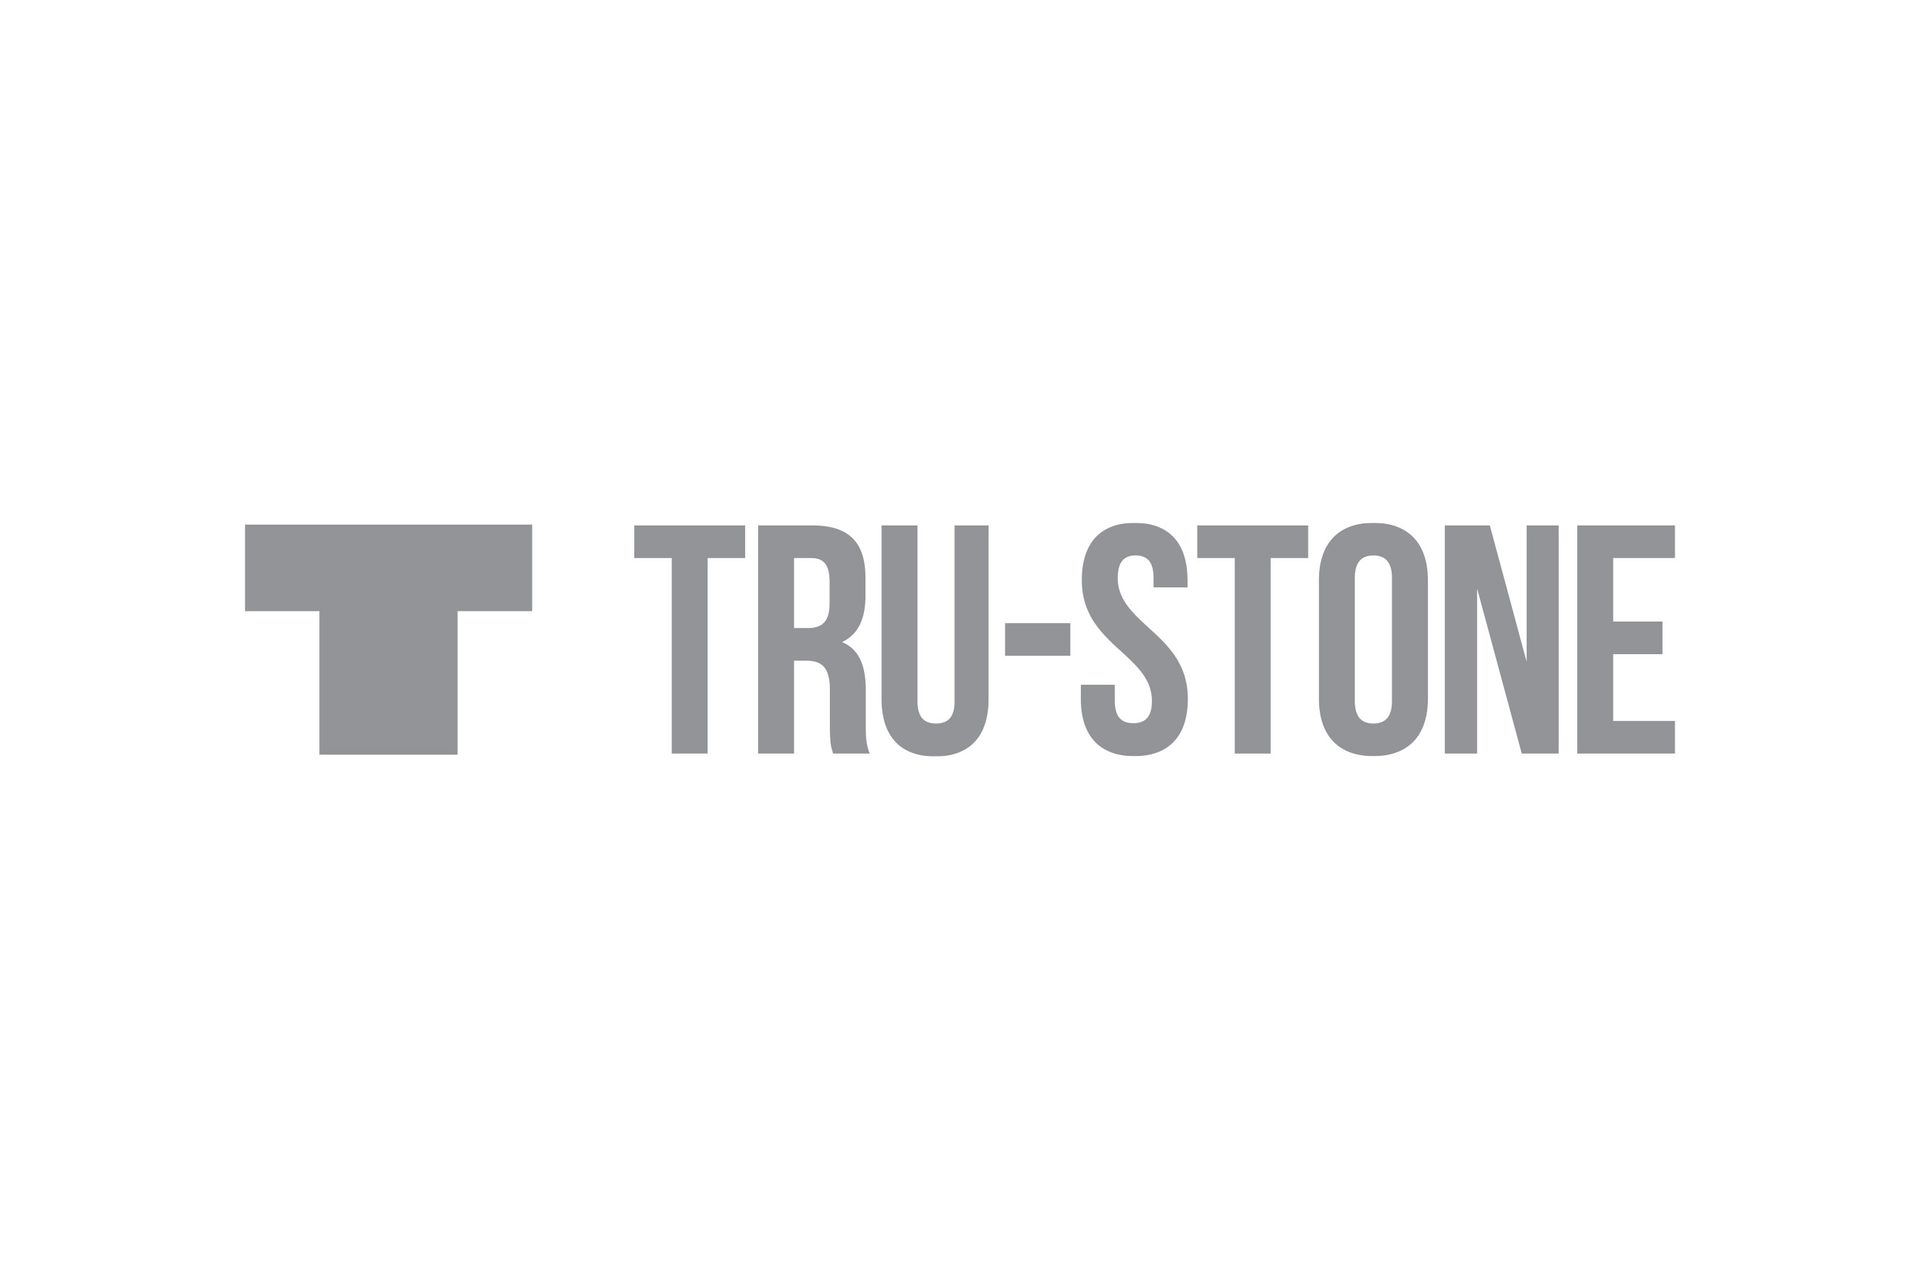 Light grey Tru-stone logo